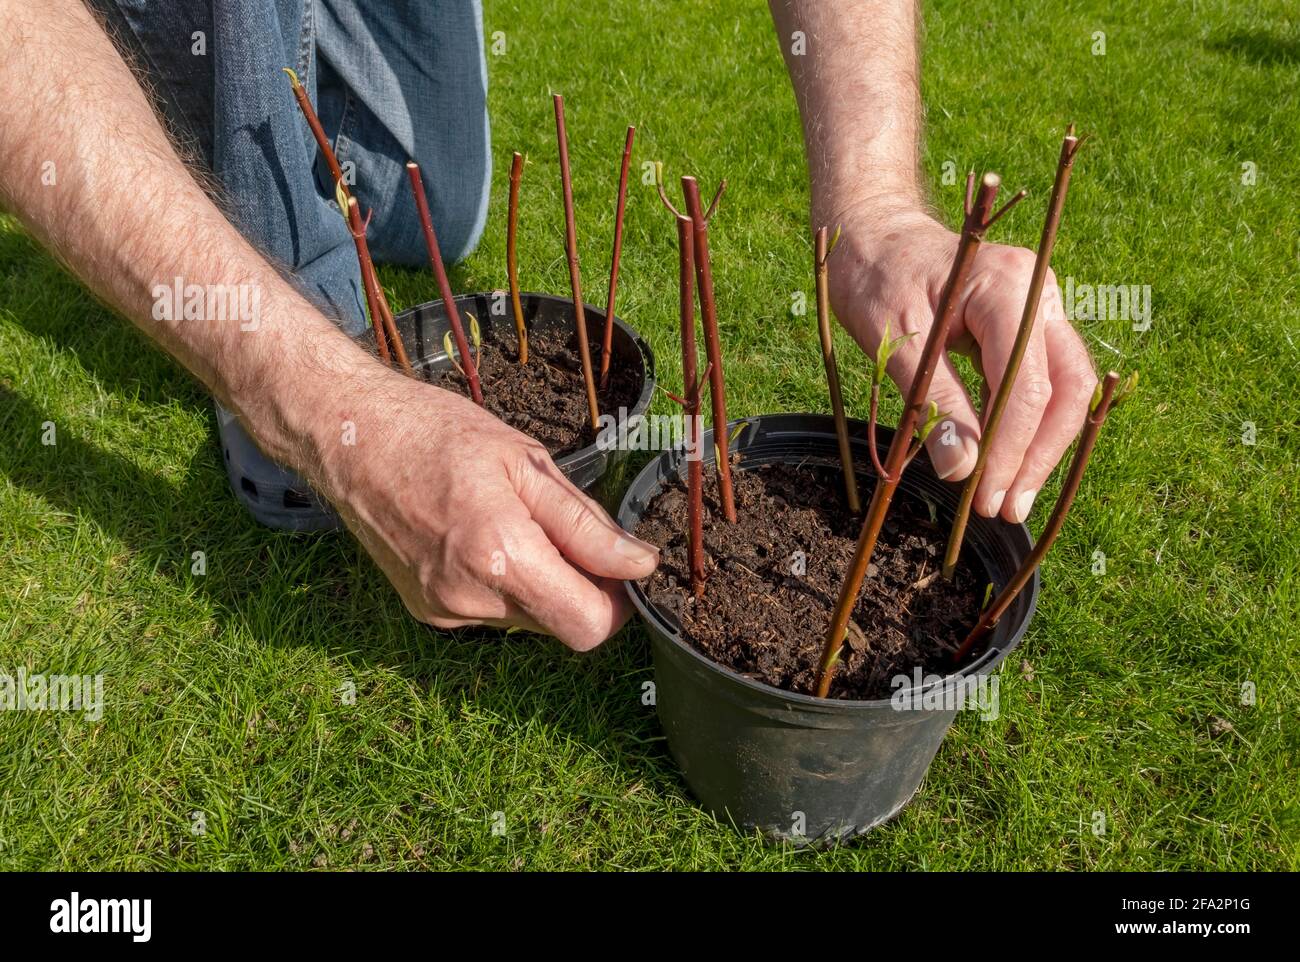 Gros plan de la plantation de l'homme prenant des boutures de bois dur cornus cultivant dans un pot de plante au printemps Angleterre Royaume-Uni GB Grande-Bretagne Banque D'Images